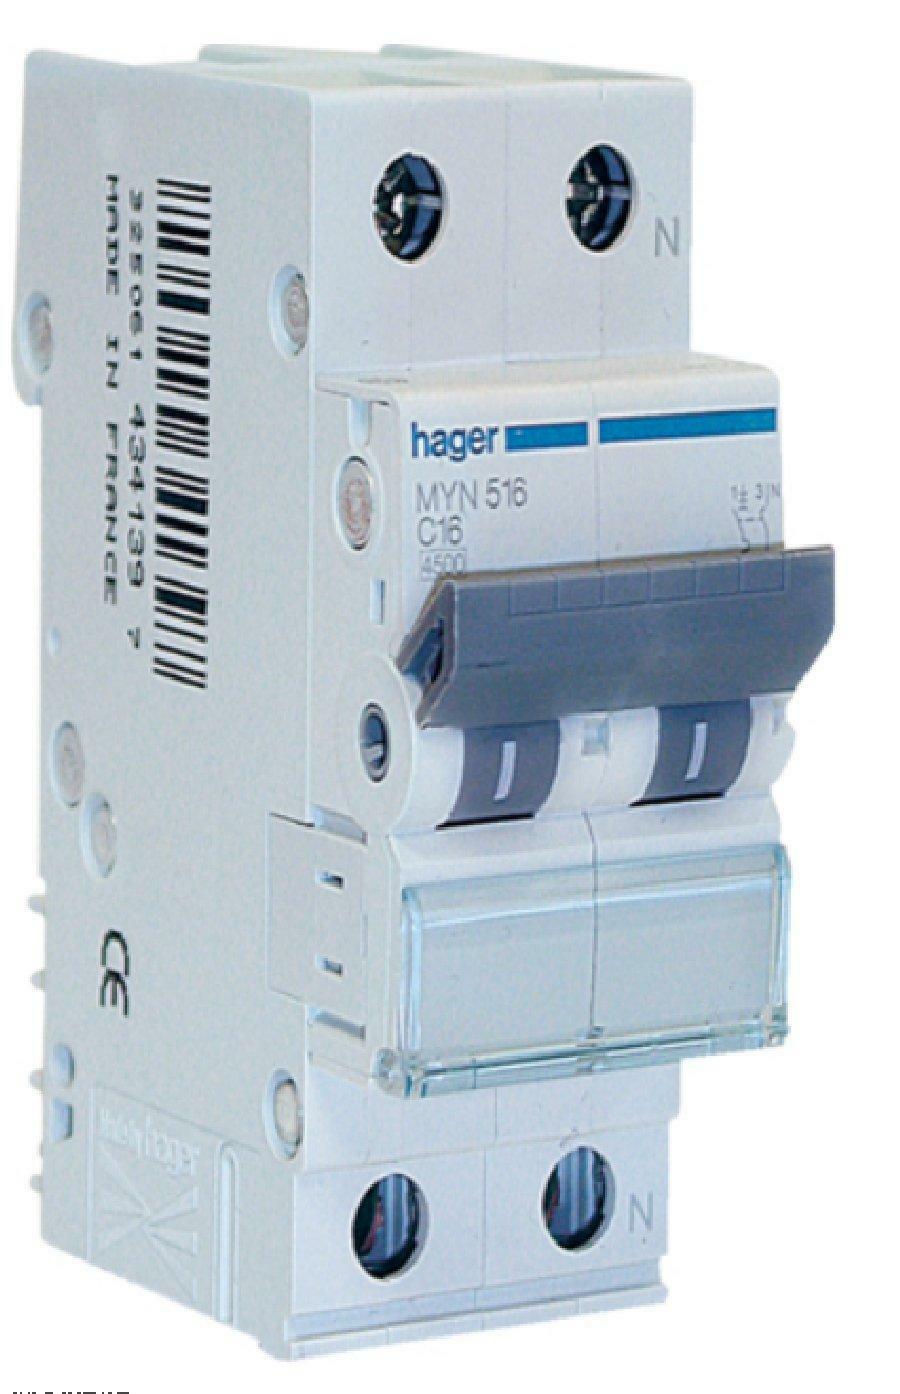 hager hager interruttore automatico modulare per comando 1p+n 16a 4.5ka c 2 moduli myn516